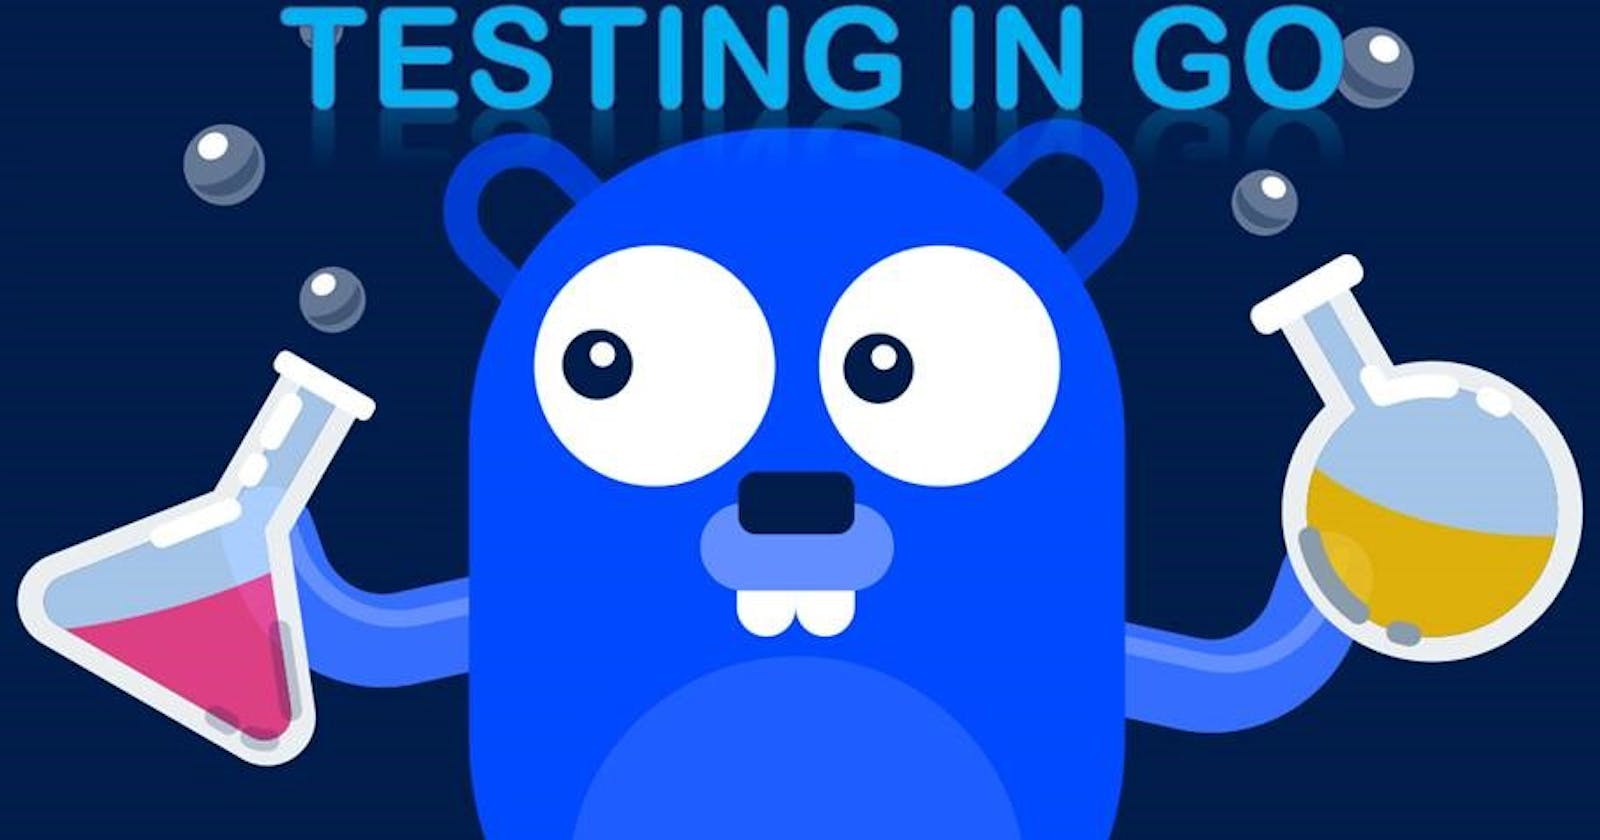 Testing in Go: Increasing efficiency of Code